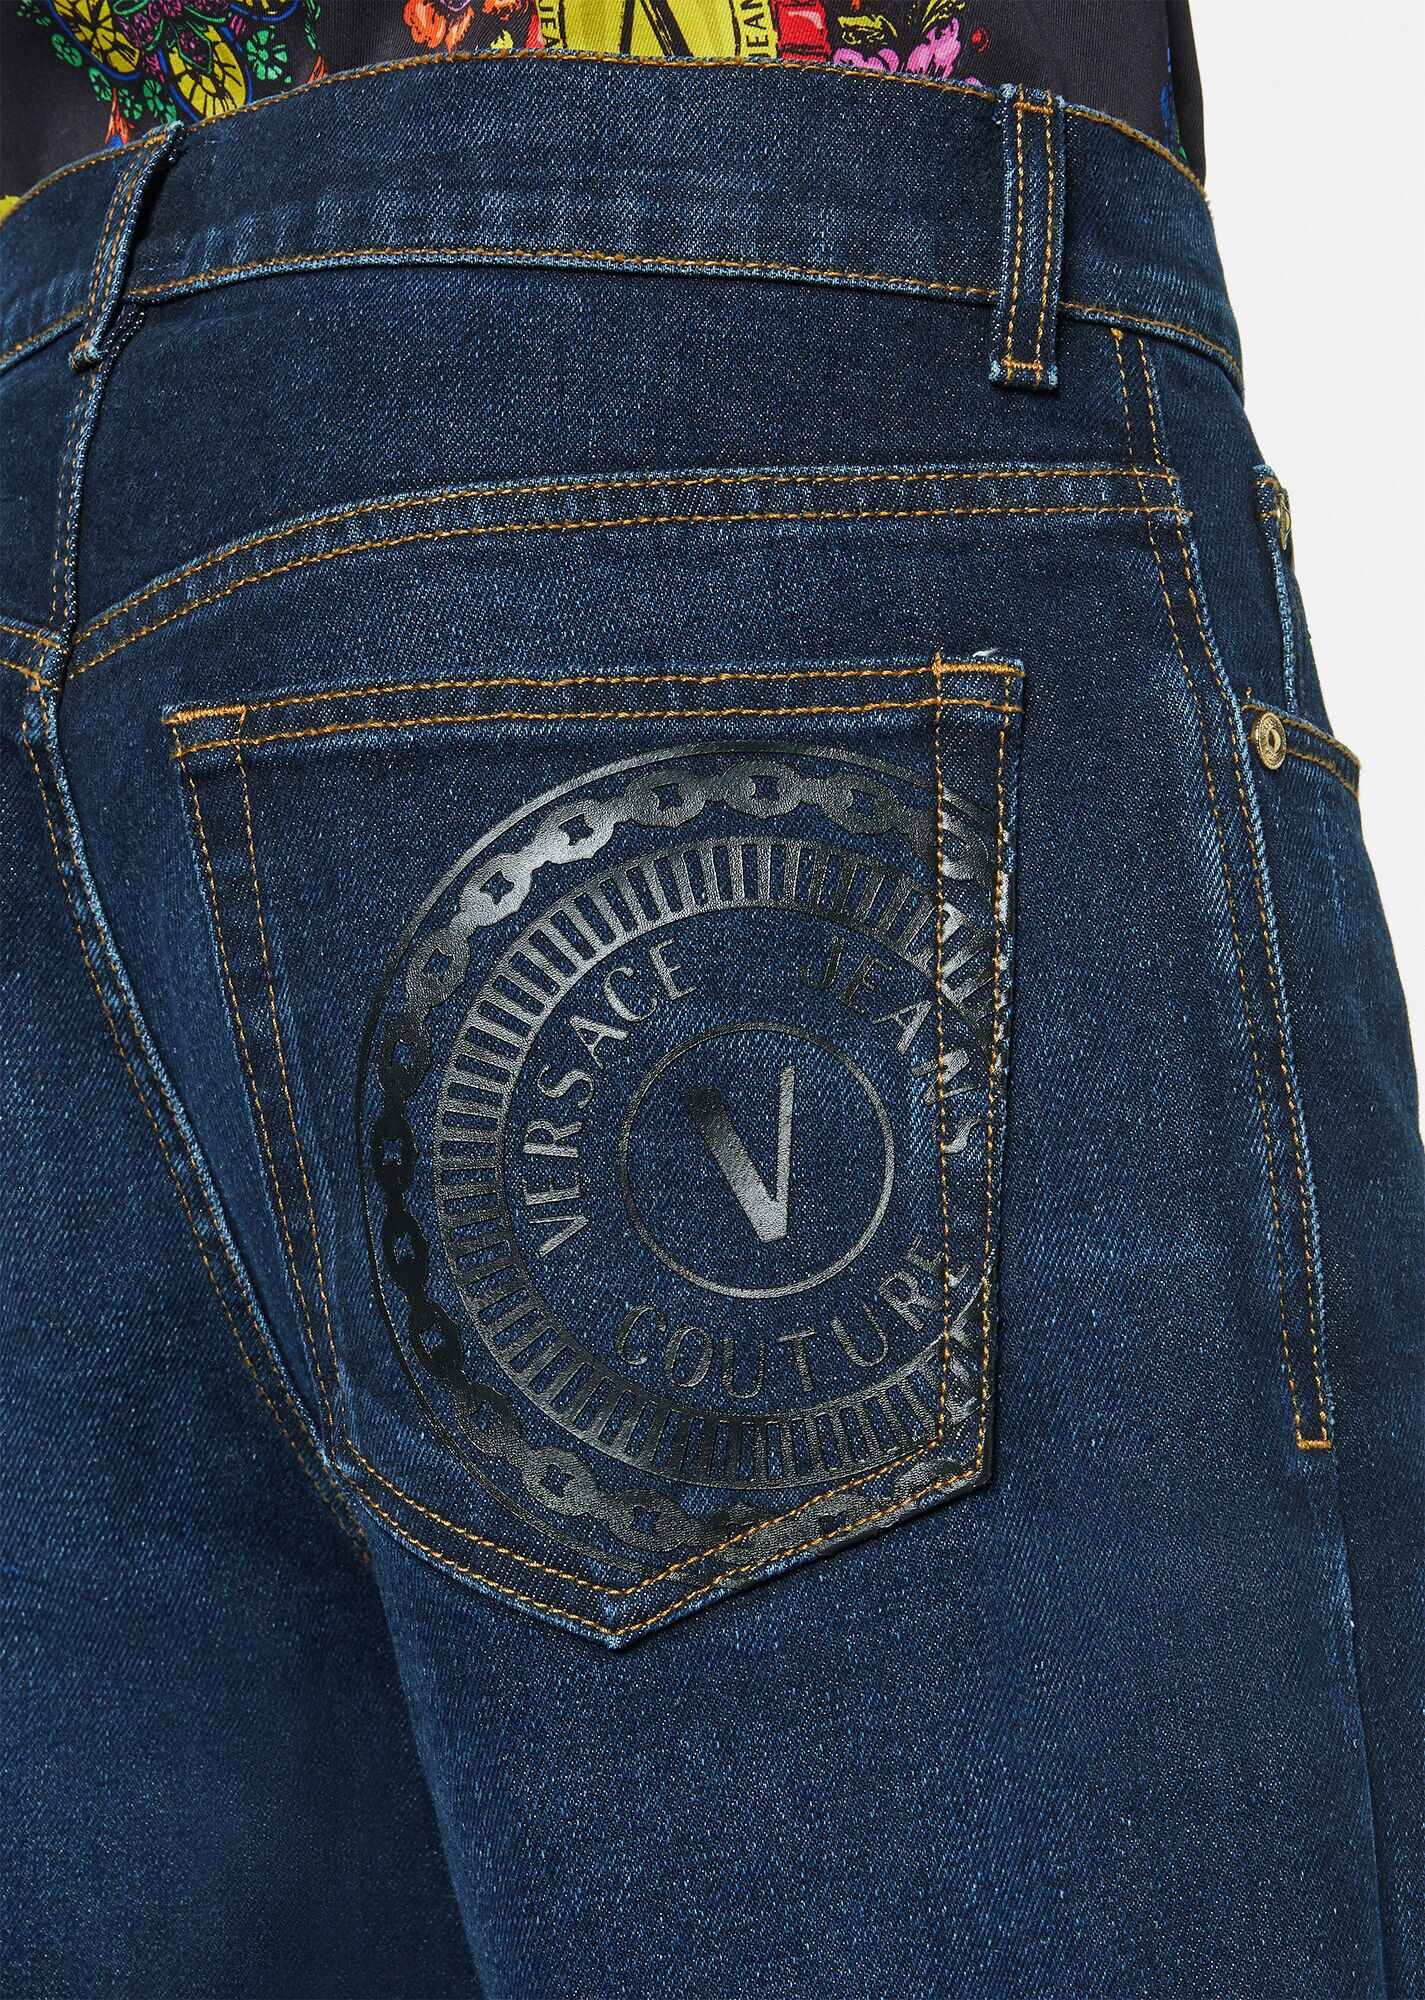 V-Emblem Jeans - 5